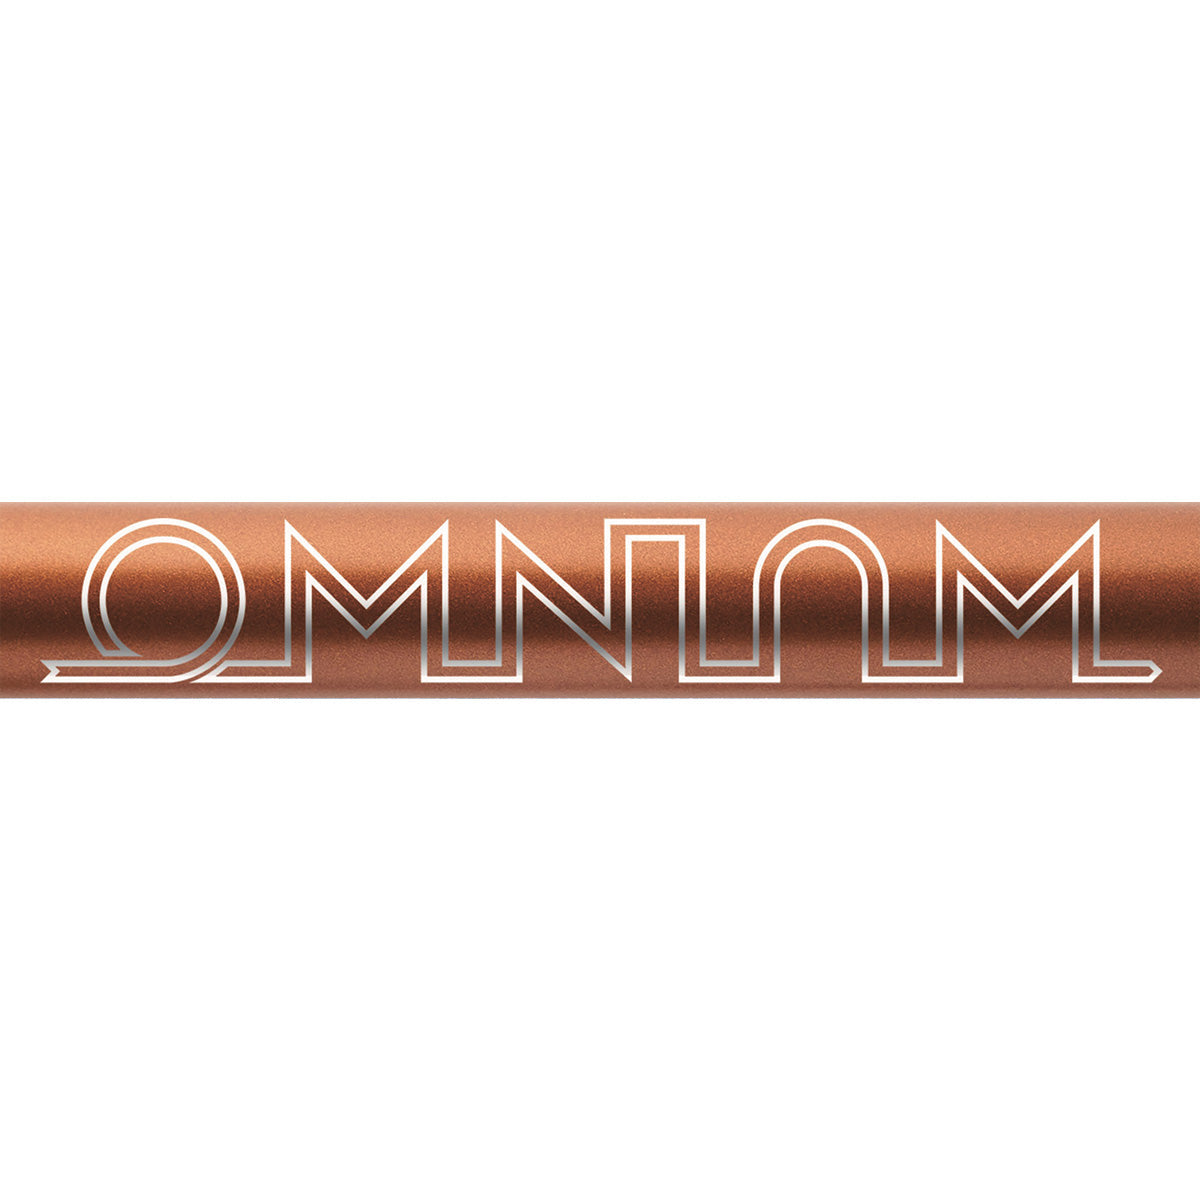 [予約商品] OMNIUM Mini V3 Complete Shimano 1x11